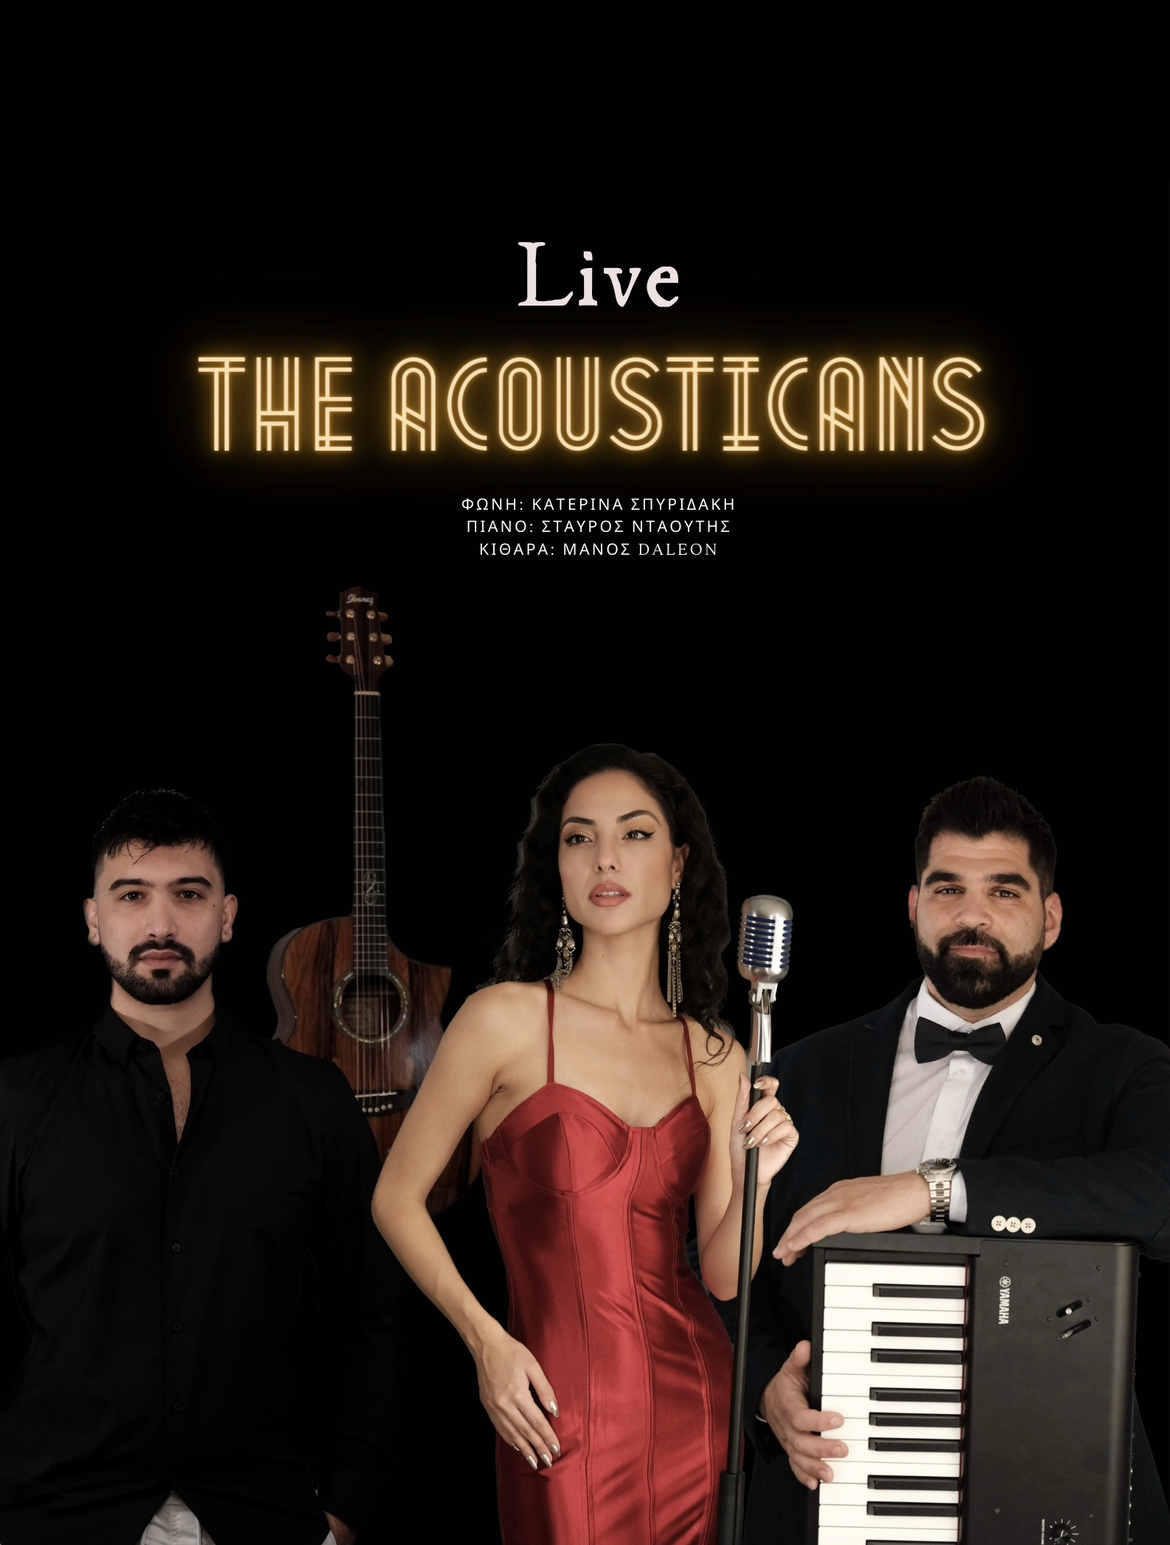 The Acousticans